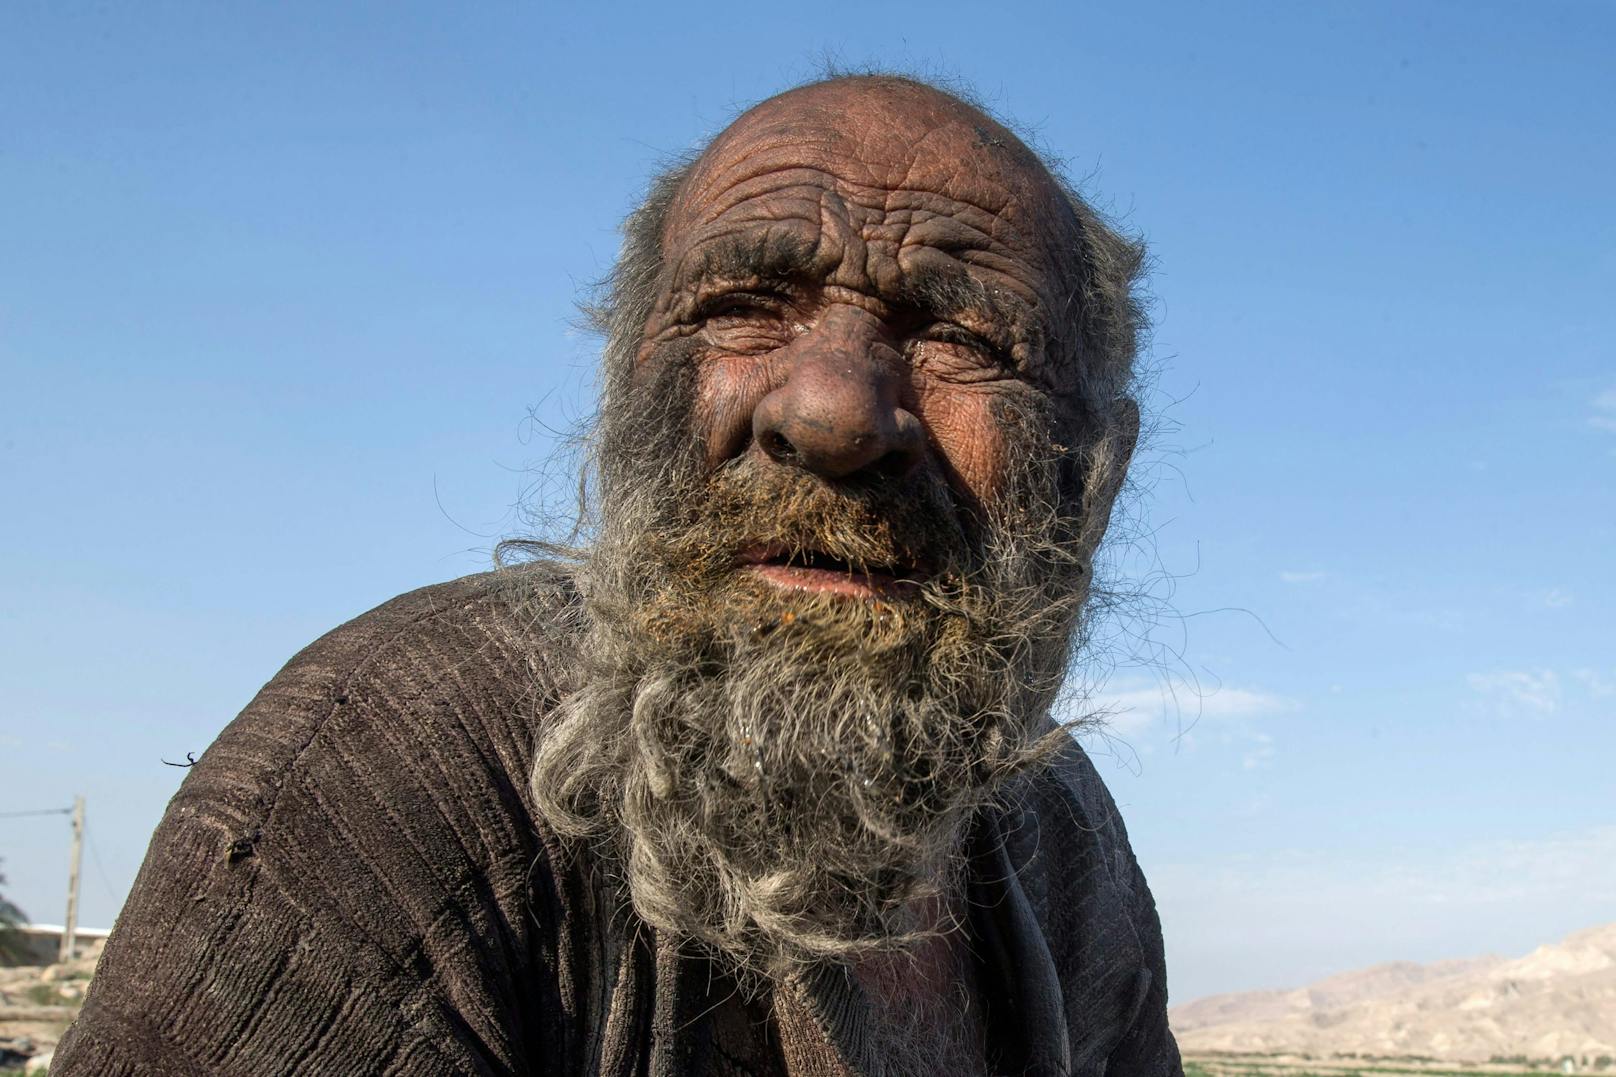 Am Sonntag starb der als "schmutzigster Mann der Welt" bekannt gewordene Mann im stolzen Alter von 94 Jahren in der südiranischen Provins Fars.